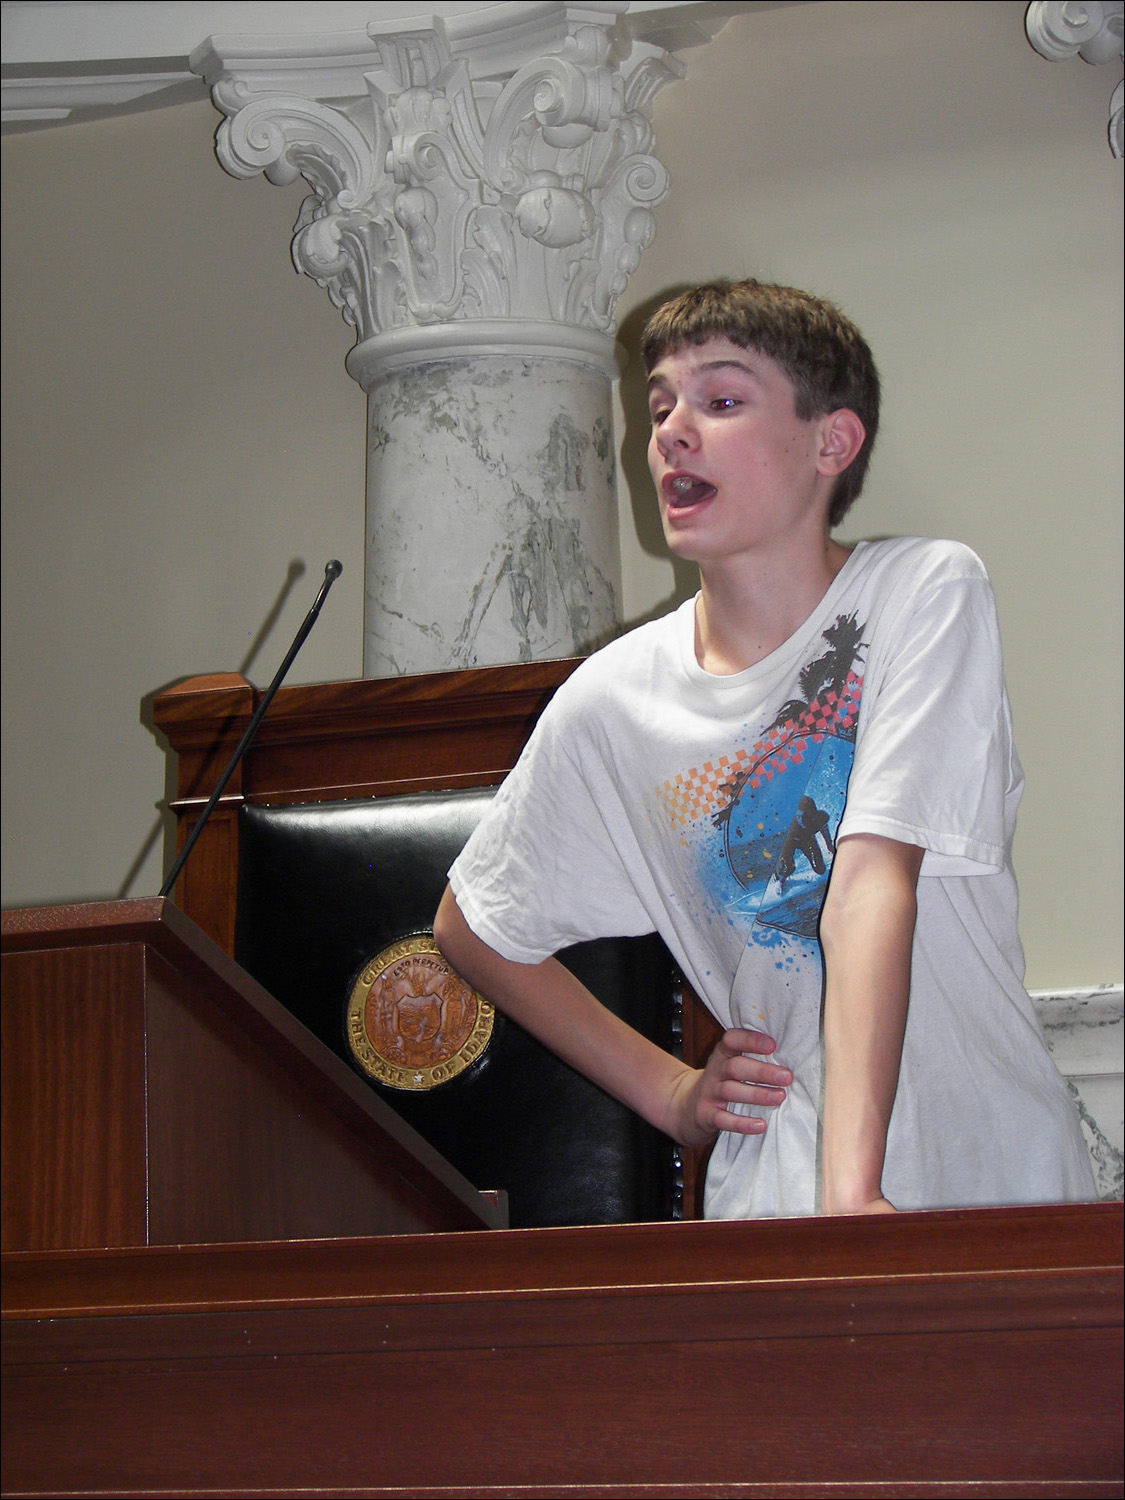 Jonathon as acting assembly speaker